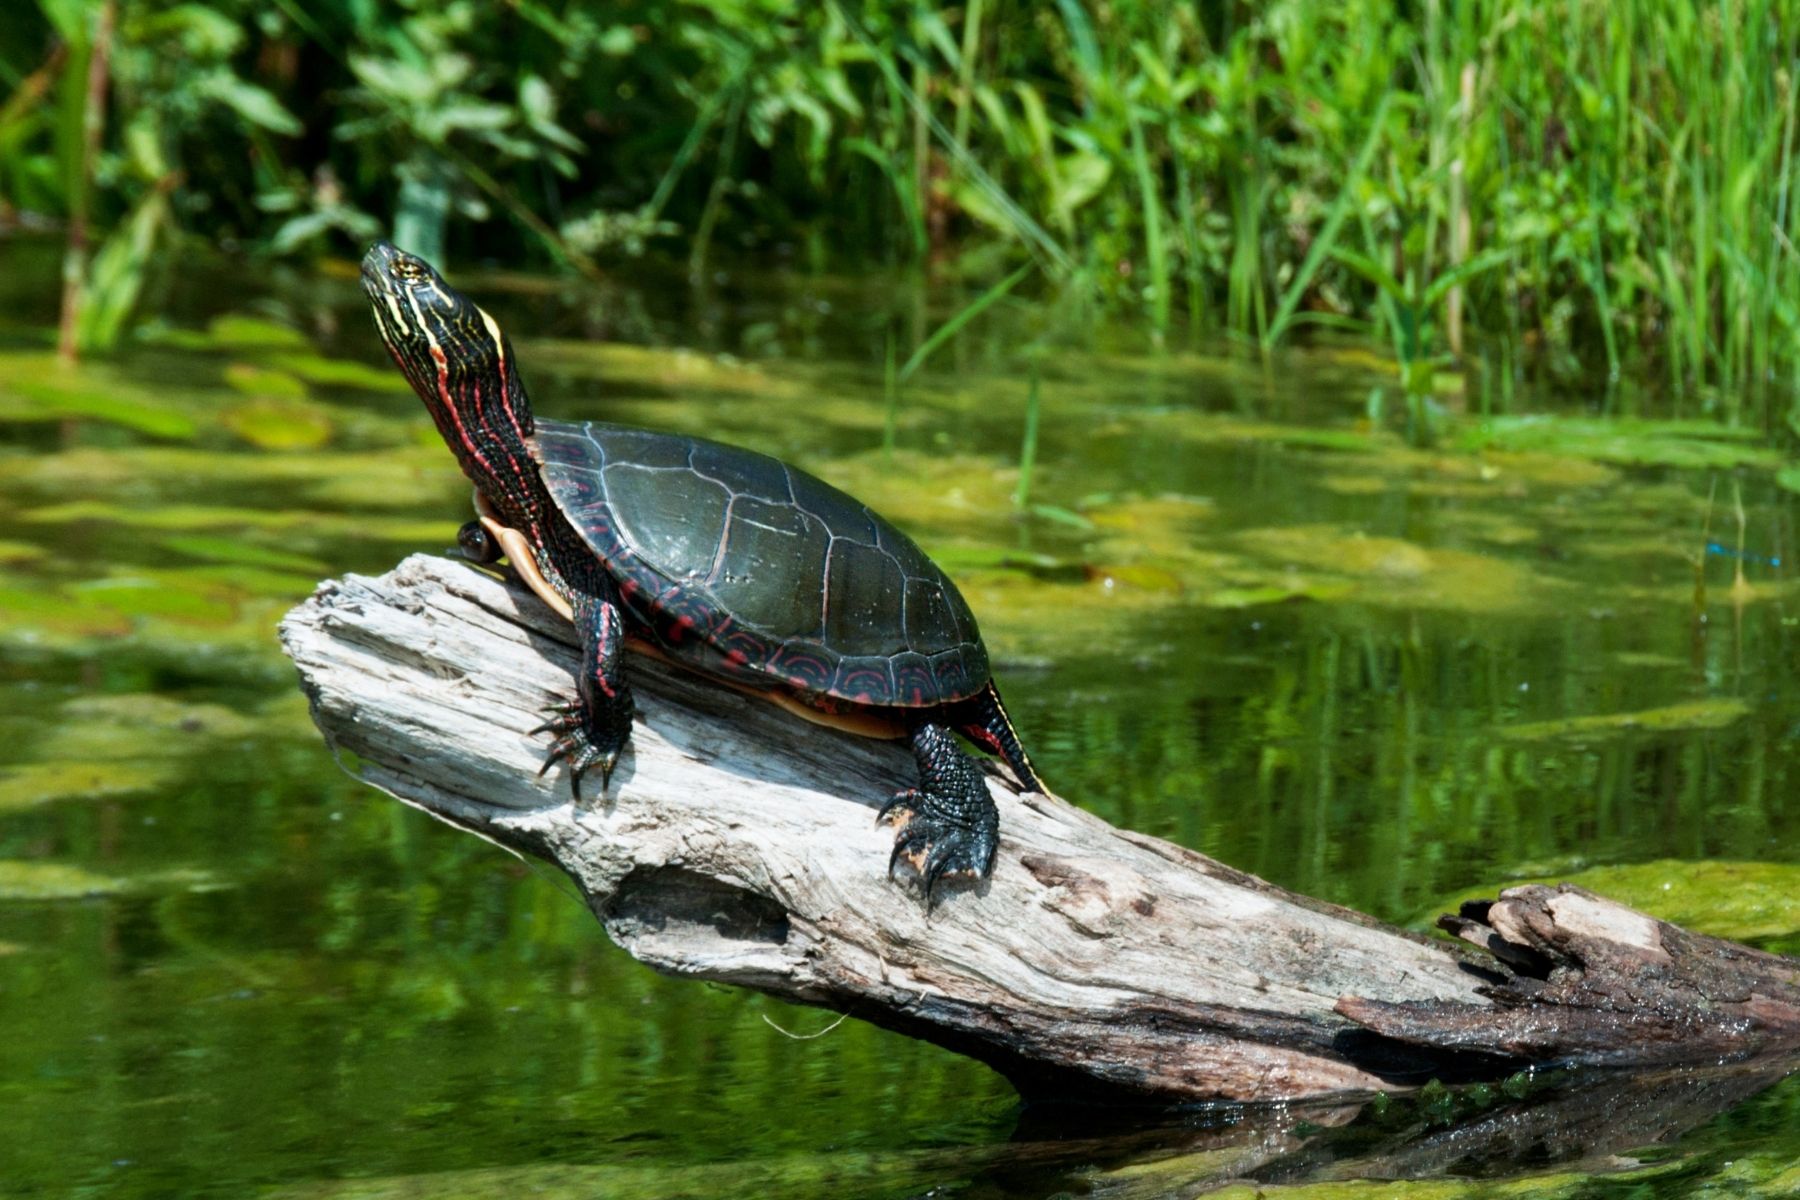 Mud Turtle sunbathing on a log